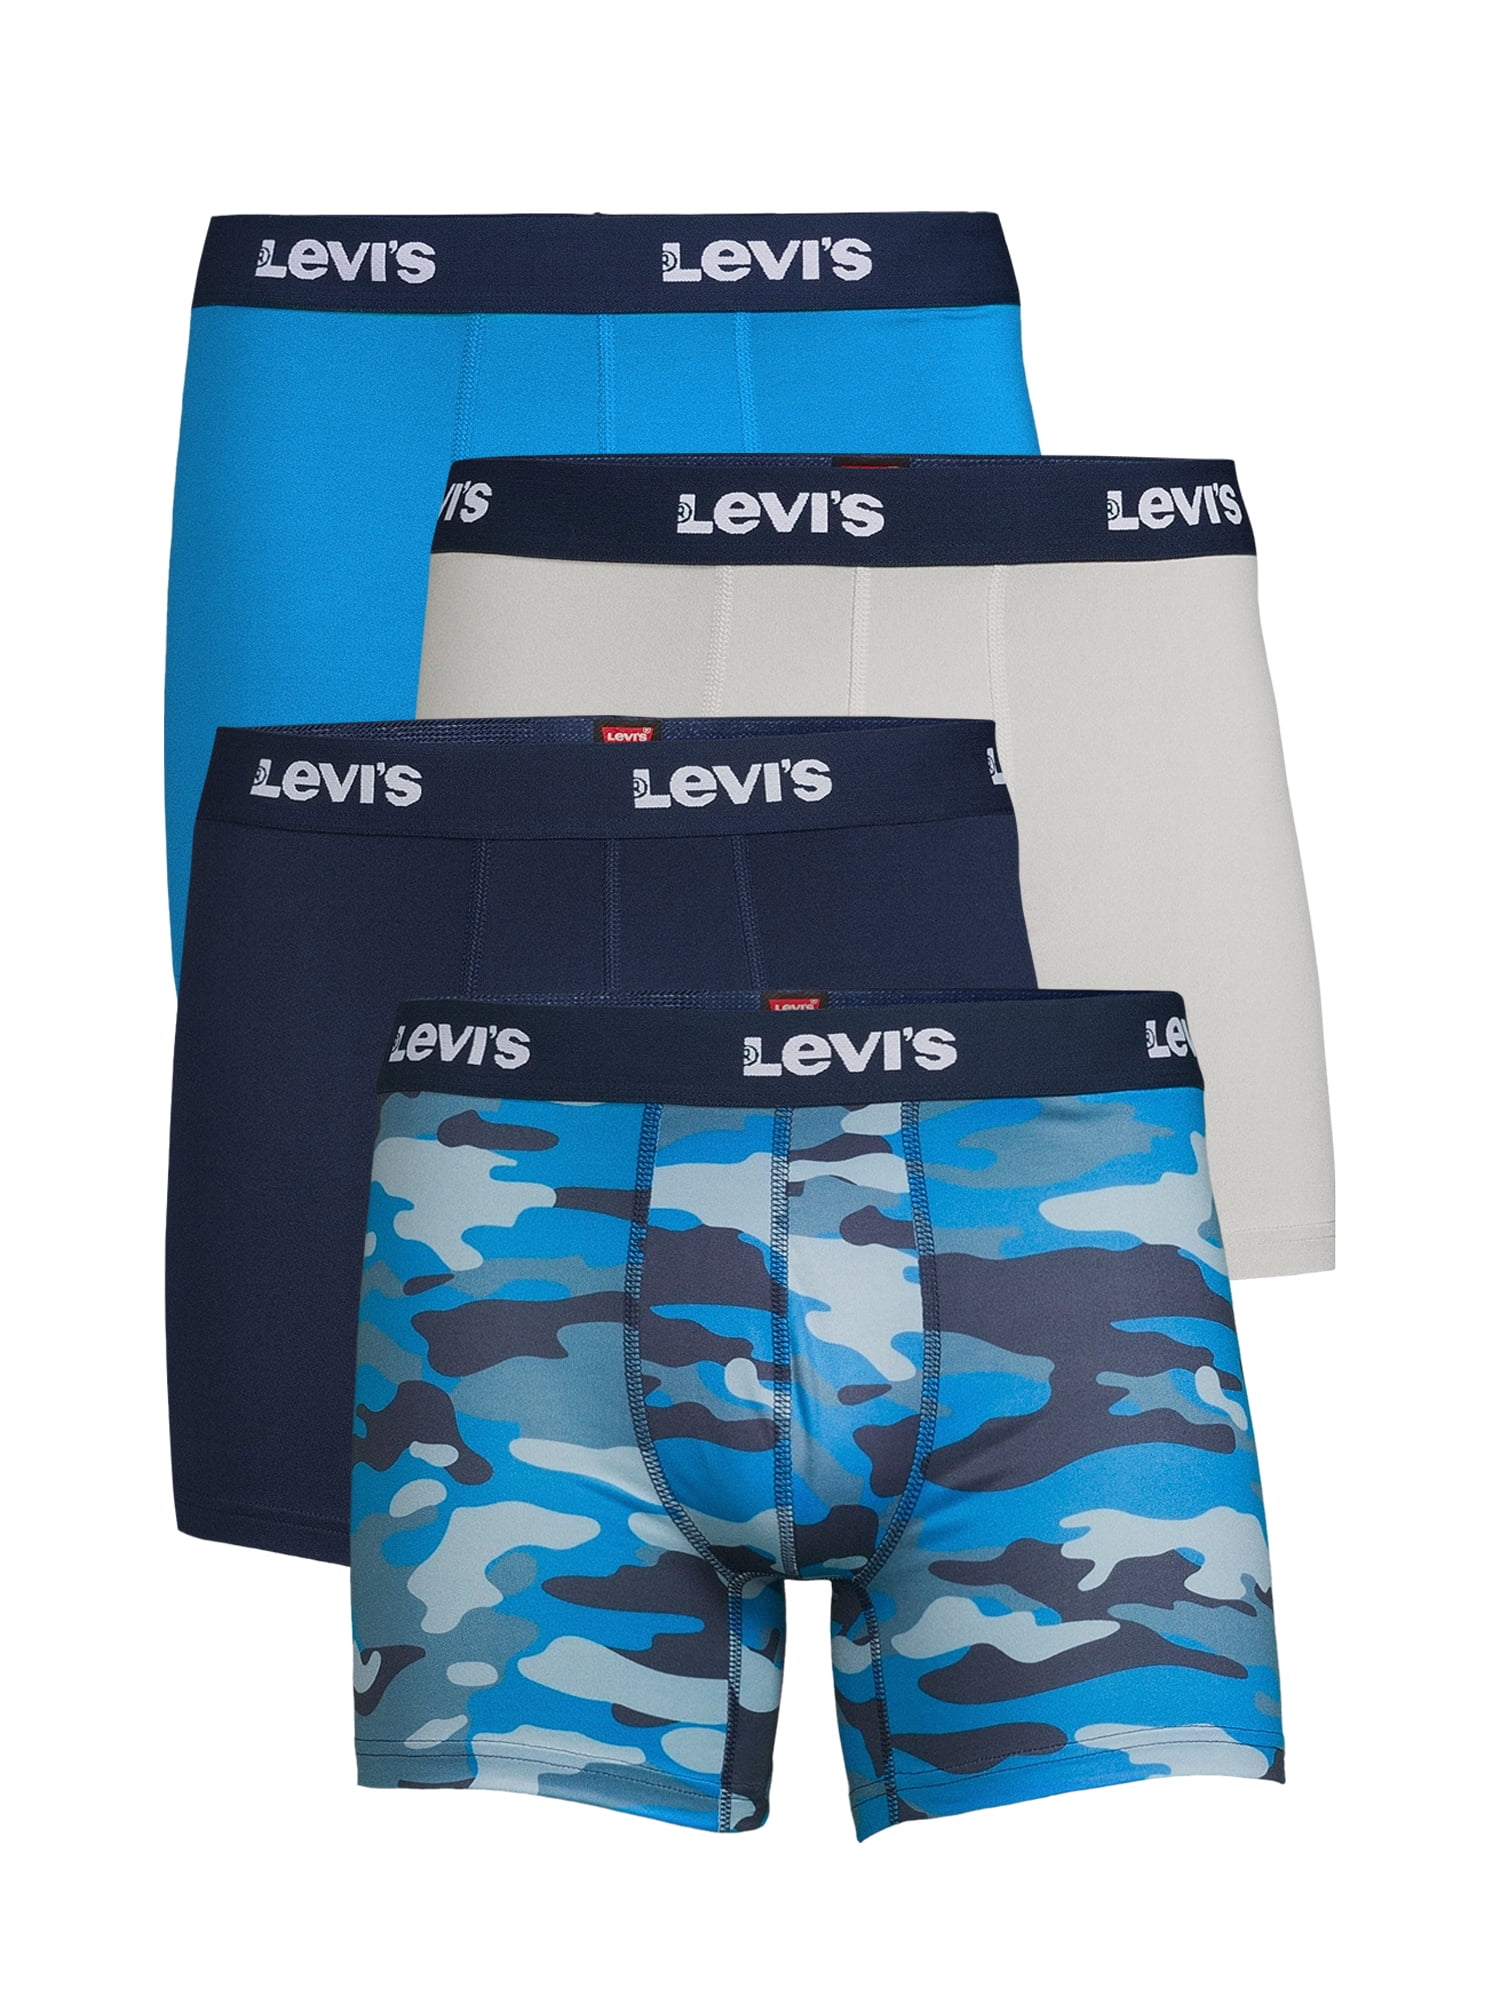 Levi's 4-Pack Adult Mens Microfiber Boxer Briefs, Sizes S-XL 